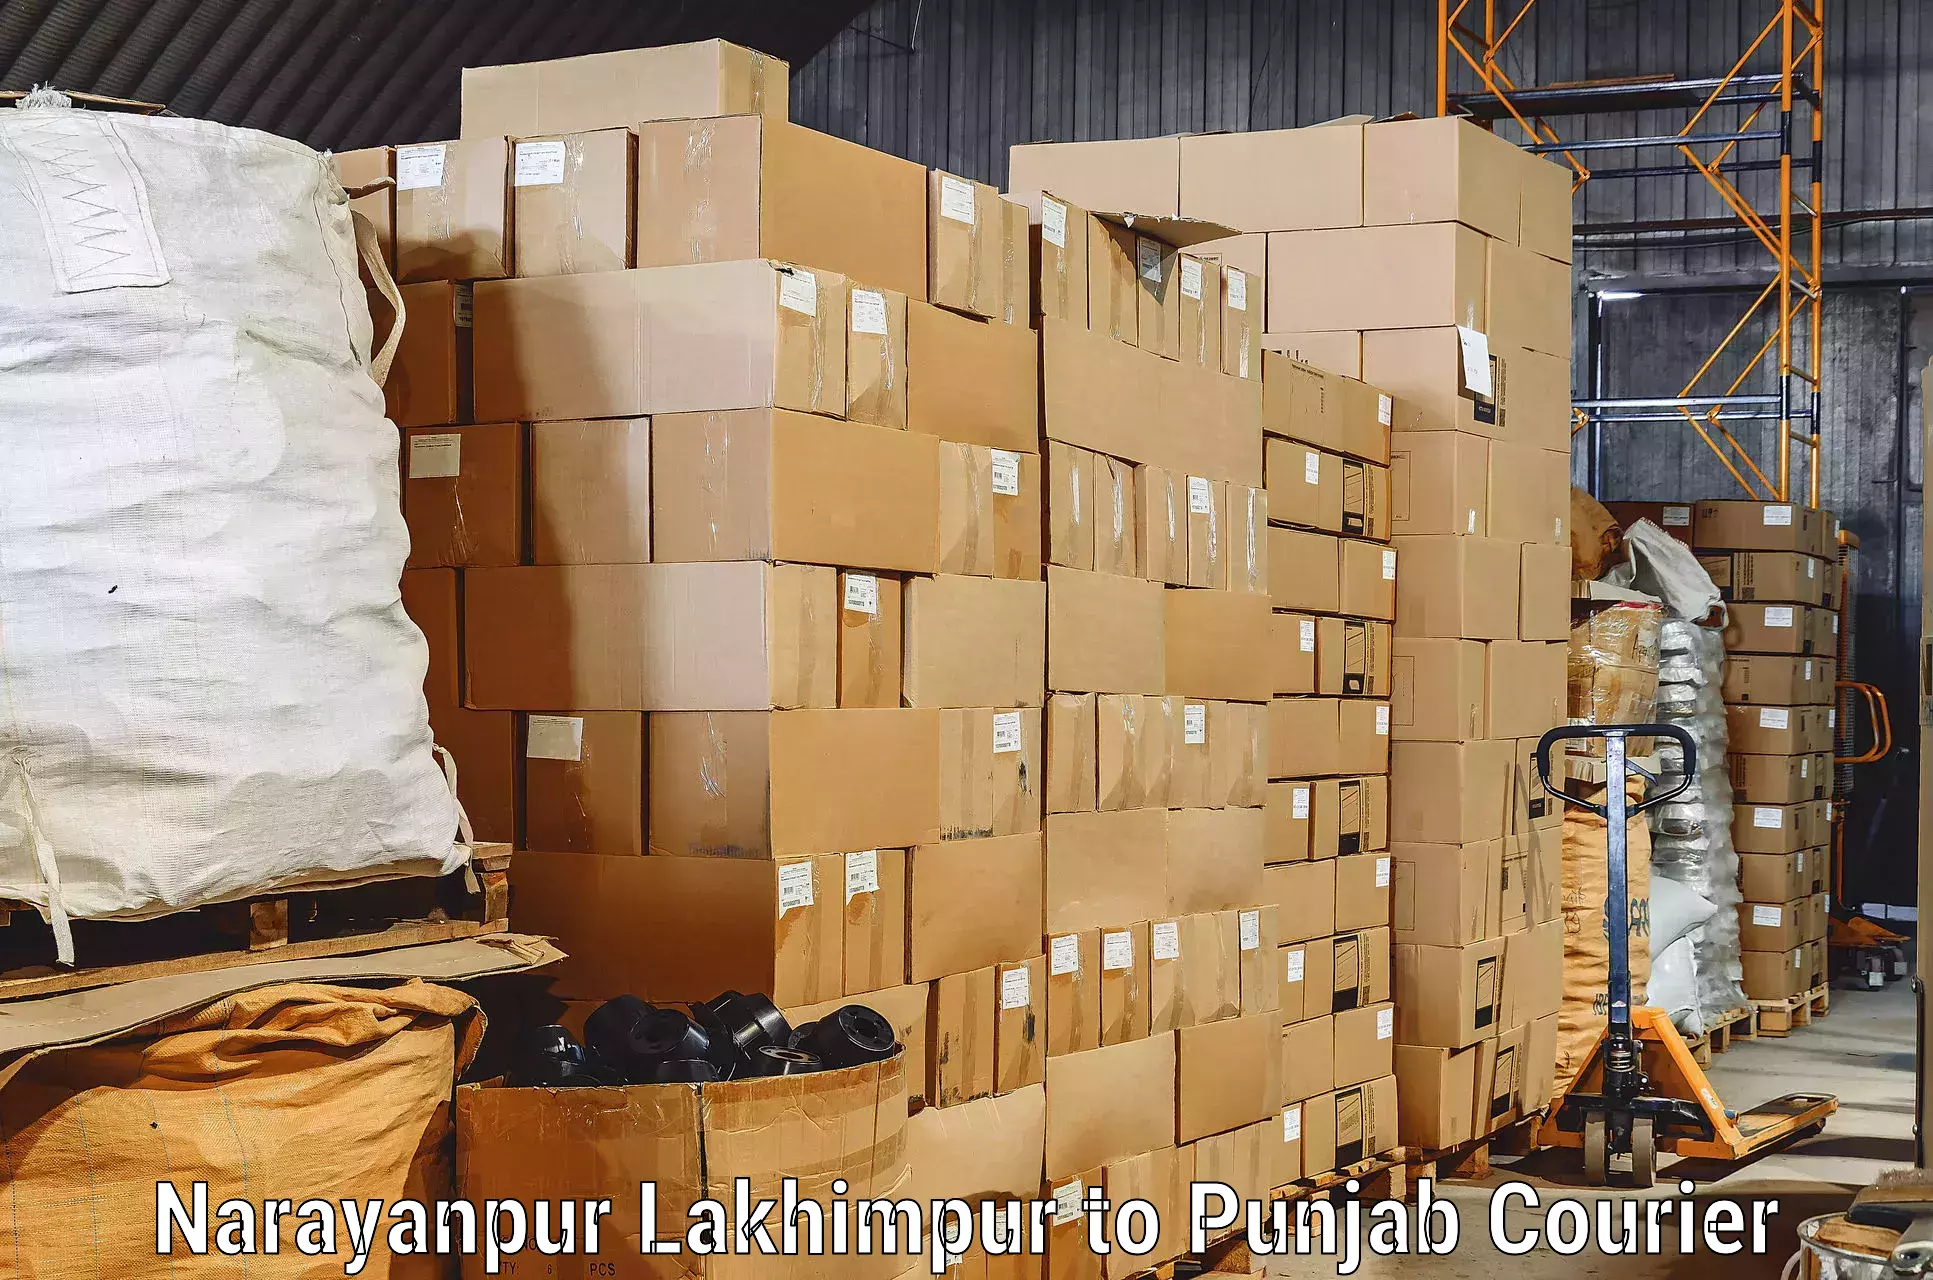 Furniture delivery service Narayanpur Lakhimpur to Mandi Gobindgarh